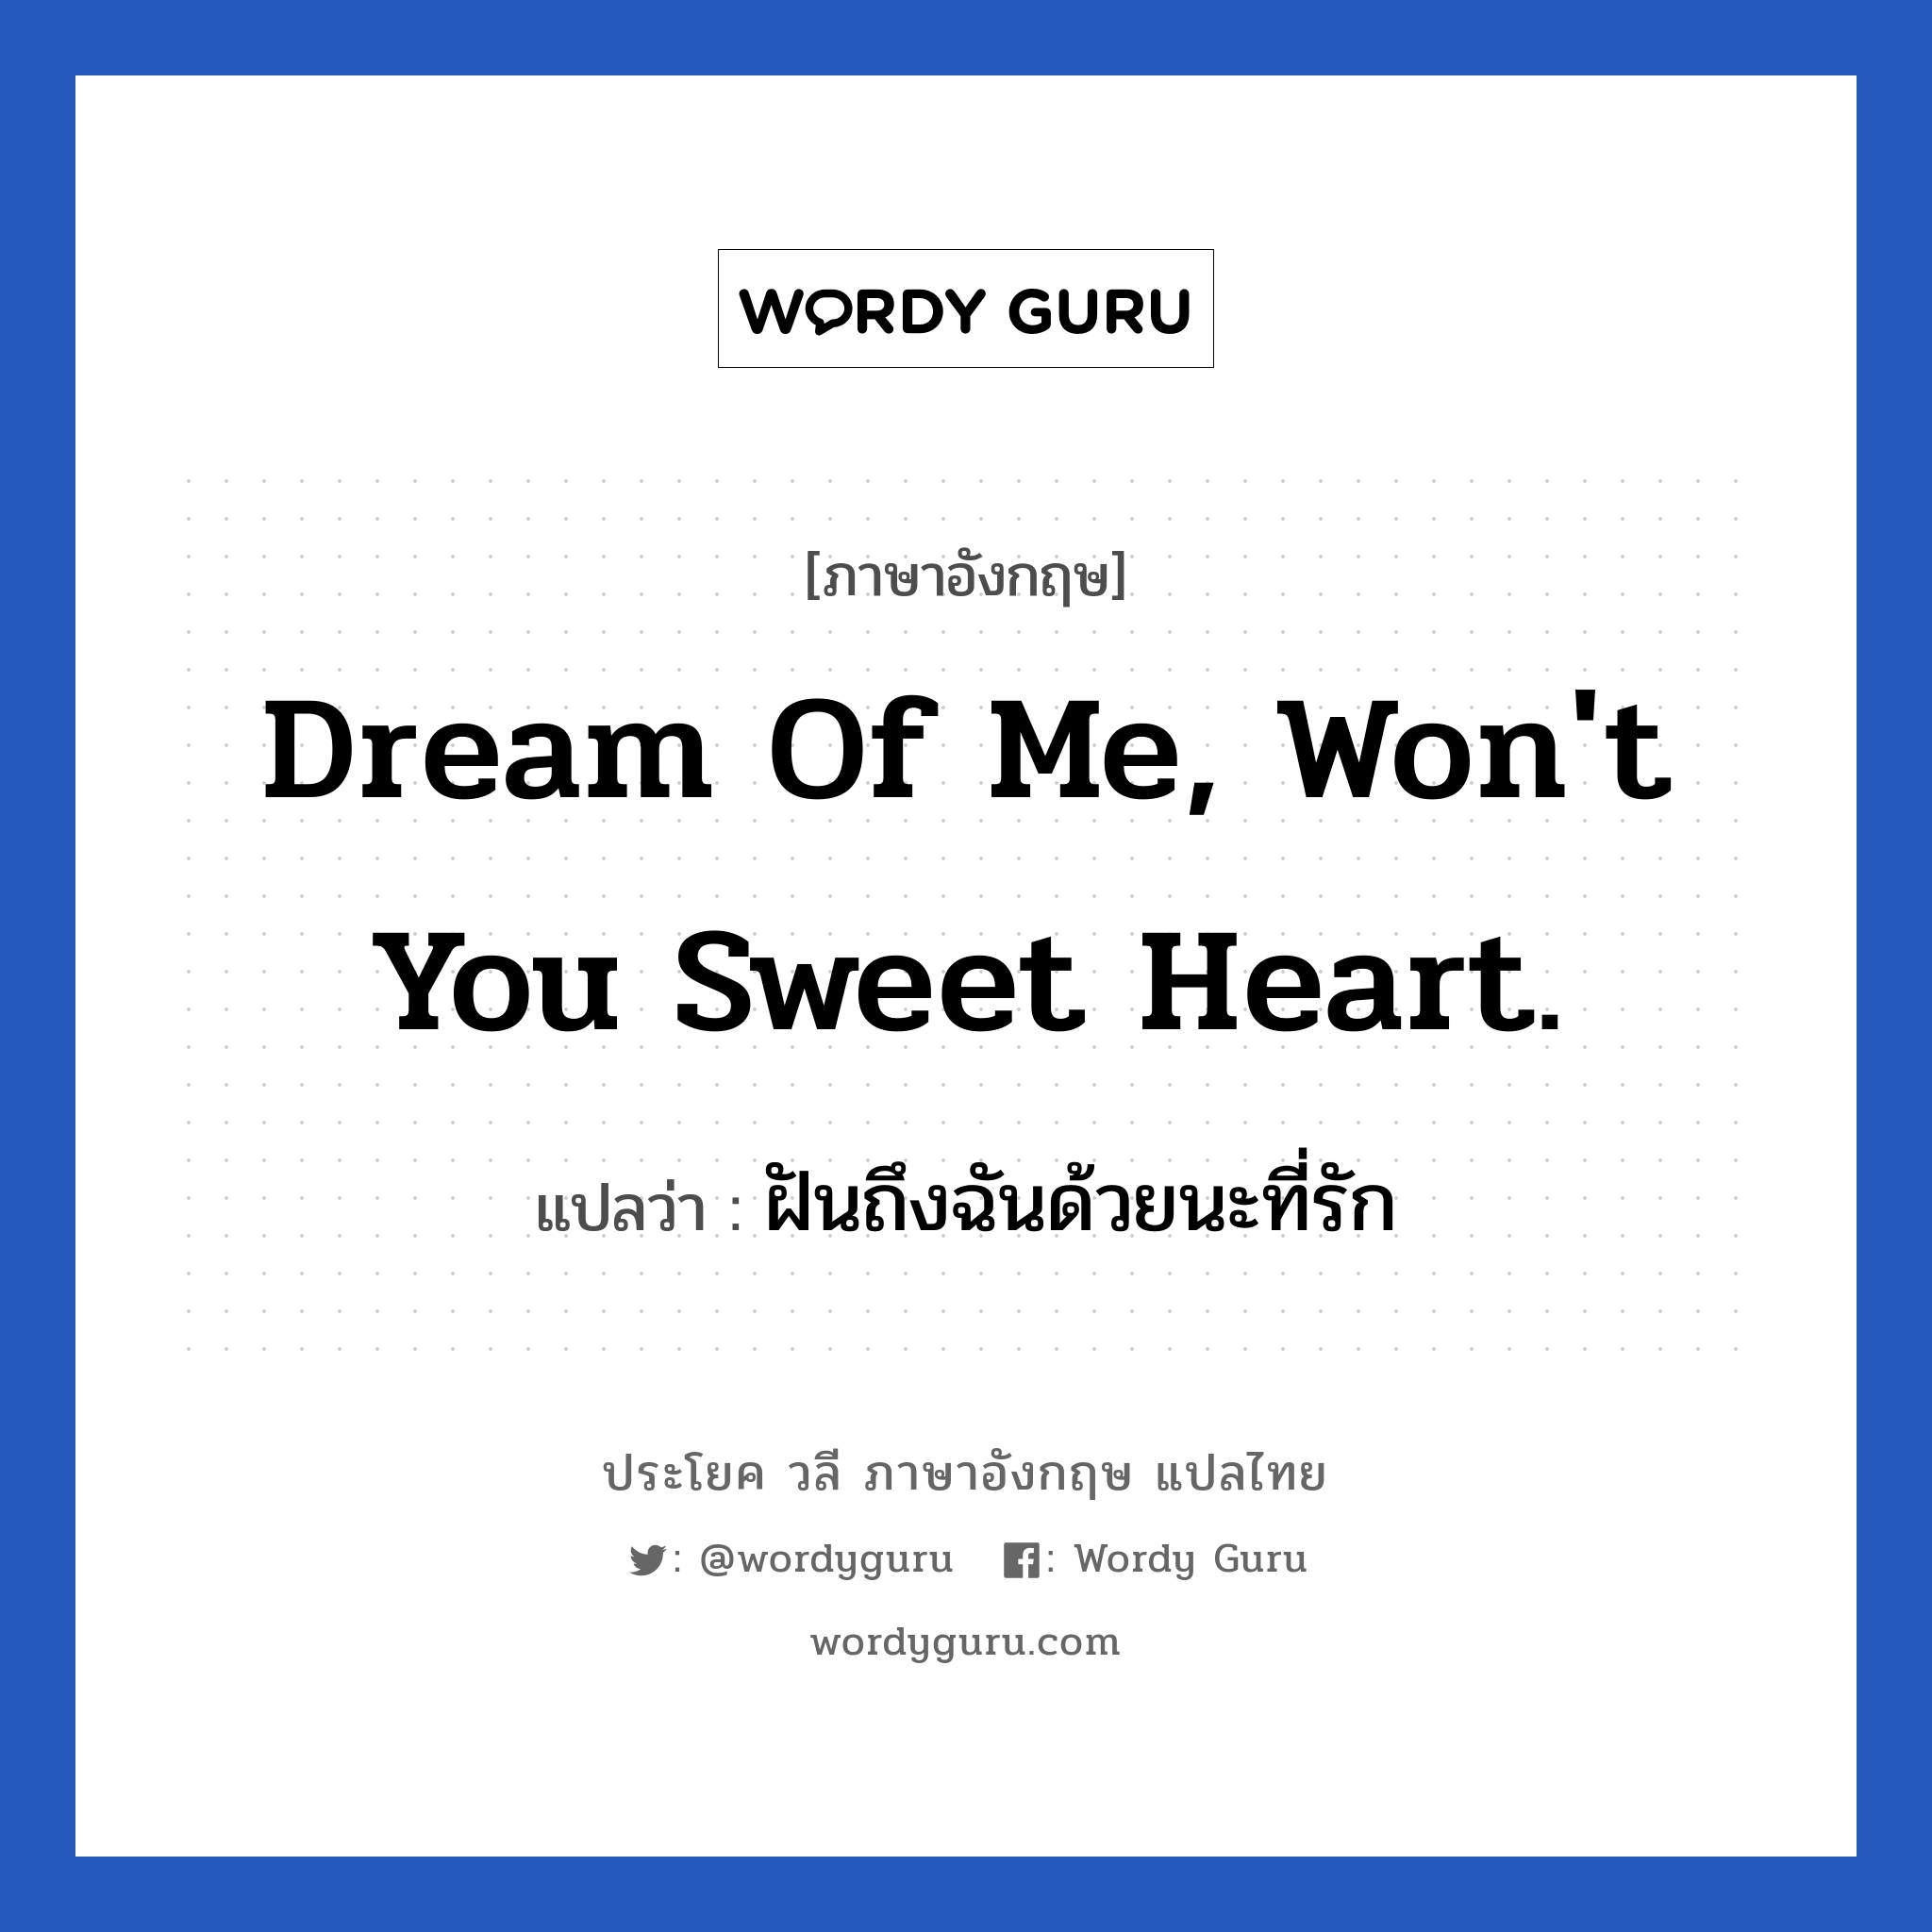 Dream of me, won't you sweet heart. แปลว่า?, วลีภาษาอังกฤษ Dream of me, won't you sweet heart. แปลว่า ฝันถึงฉันด้วยนะที่รัก หมวด ความรัก